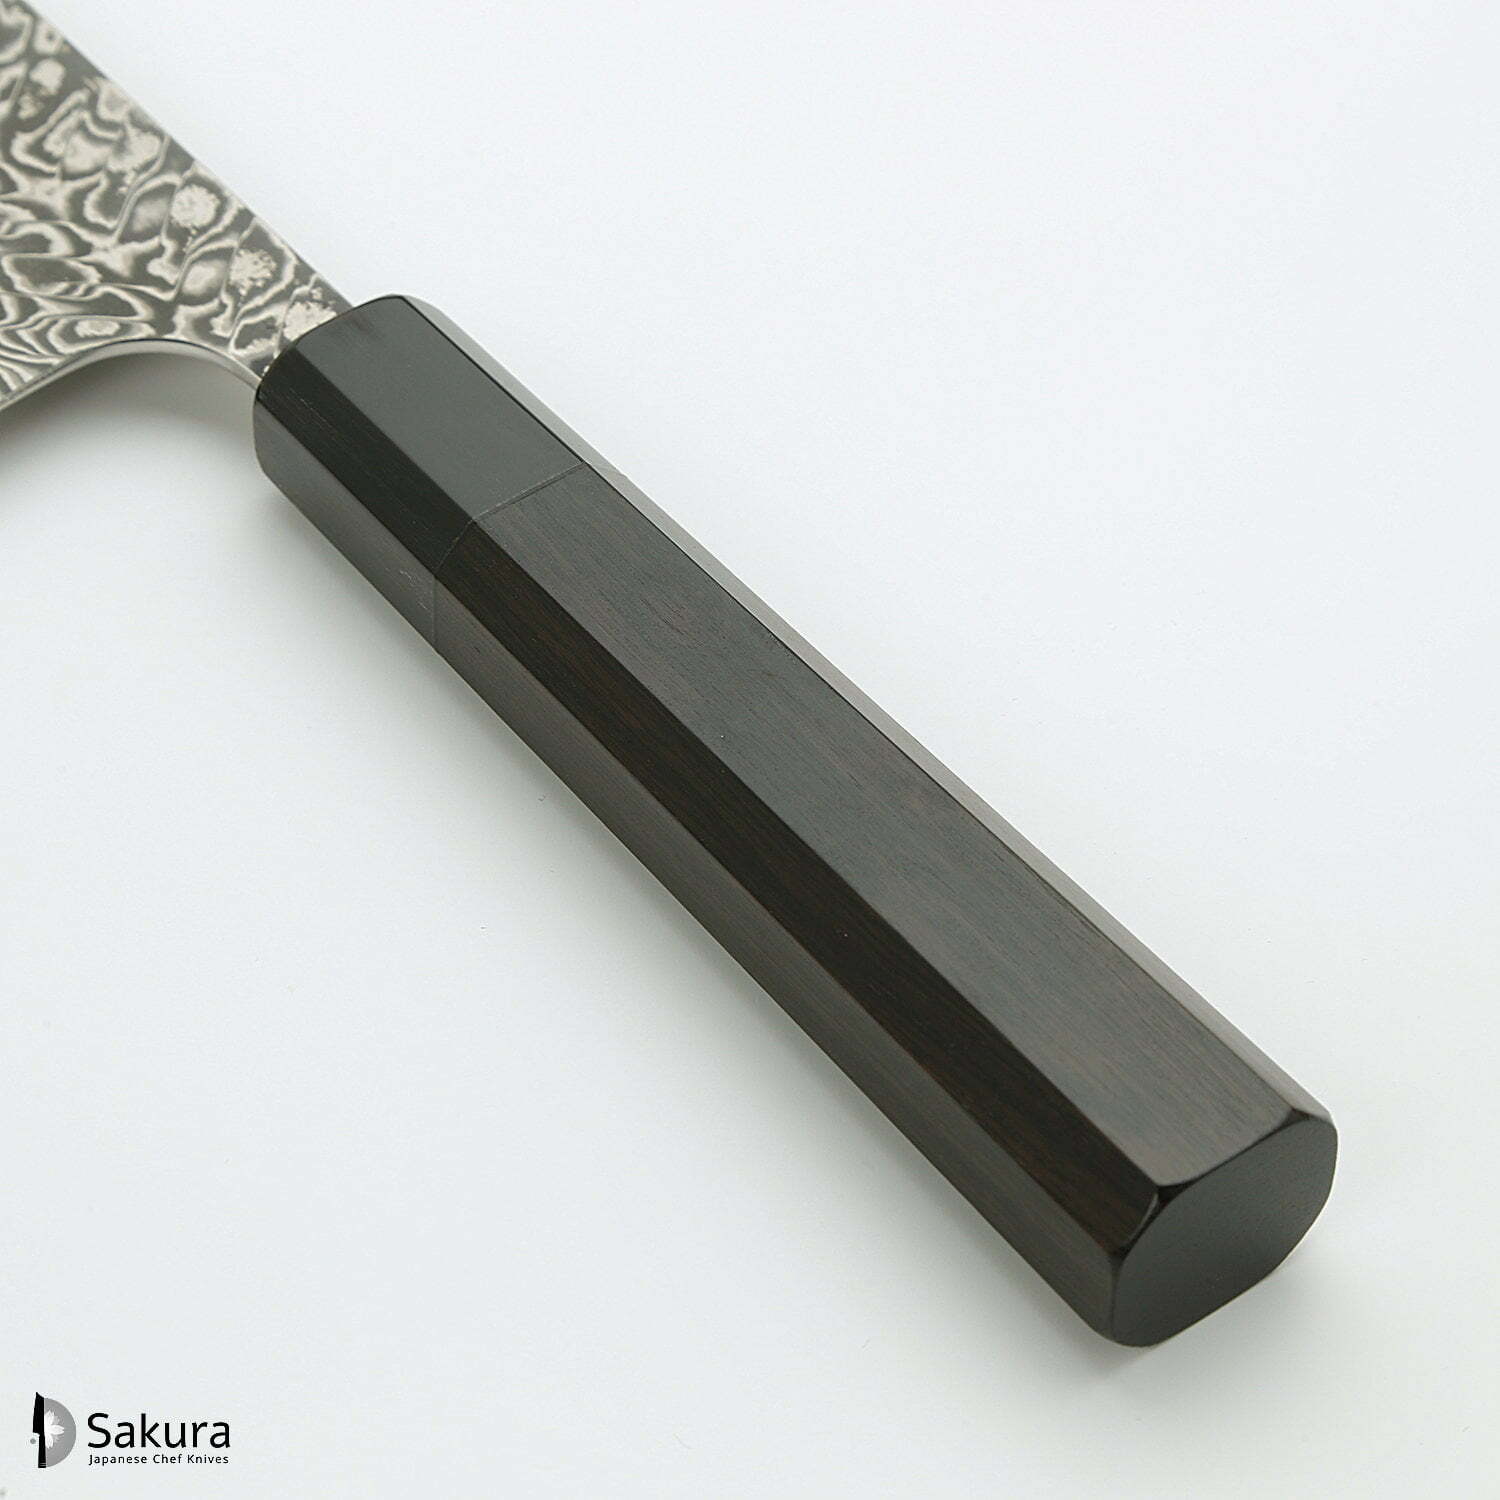 סכין רב-תכליתית סָנטוֹקוּ 165מ״מ מחושלת בעבודת יד 3 שכבות: פלדת פחמן יפנית מתקדמת מסוג R2/SG2 עטופה פלדת דמשק אל-חלד גימור דמשק יושימי קאטו יפן